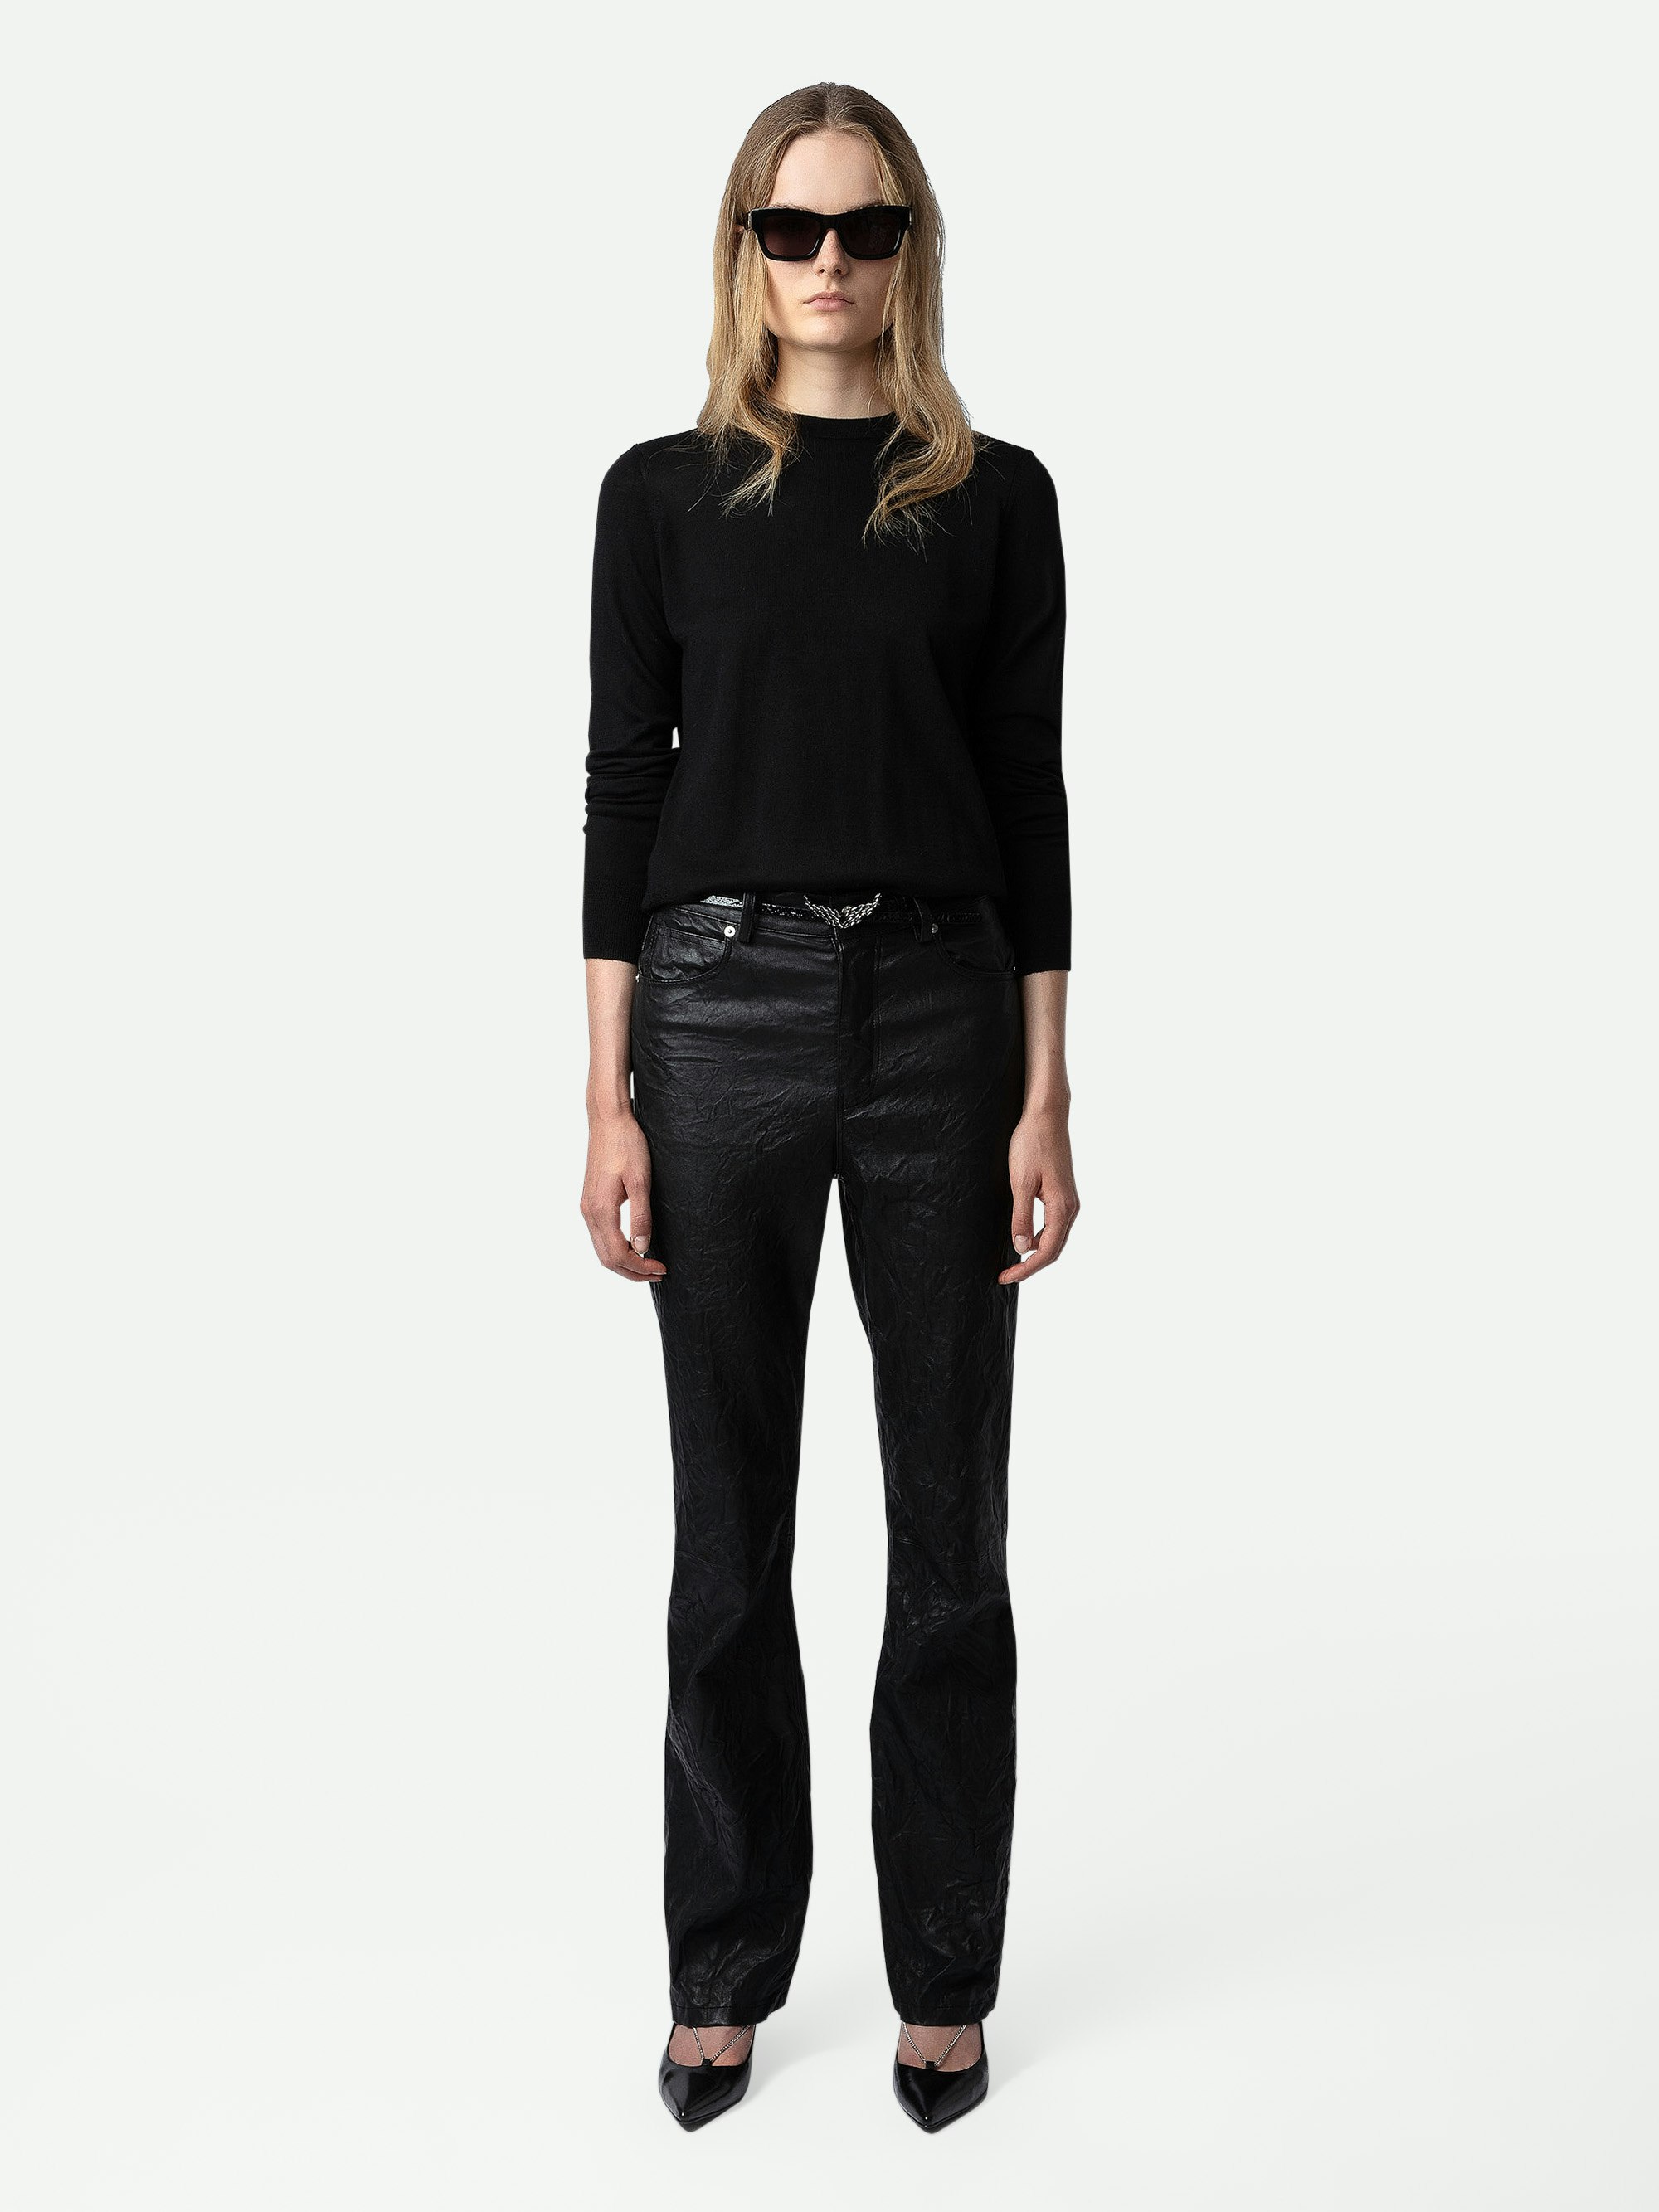 Jersey Emma 100% Lana Merina - Jersey negro de 100% lana merina con cuello redondo, mangas largas y espalda cruzada y abierta.